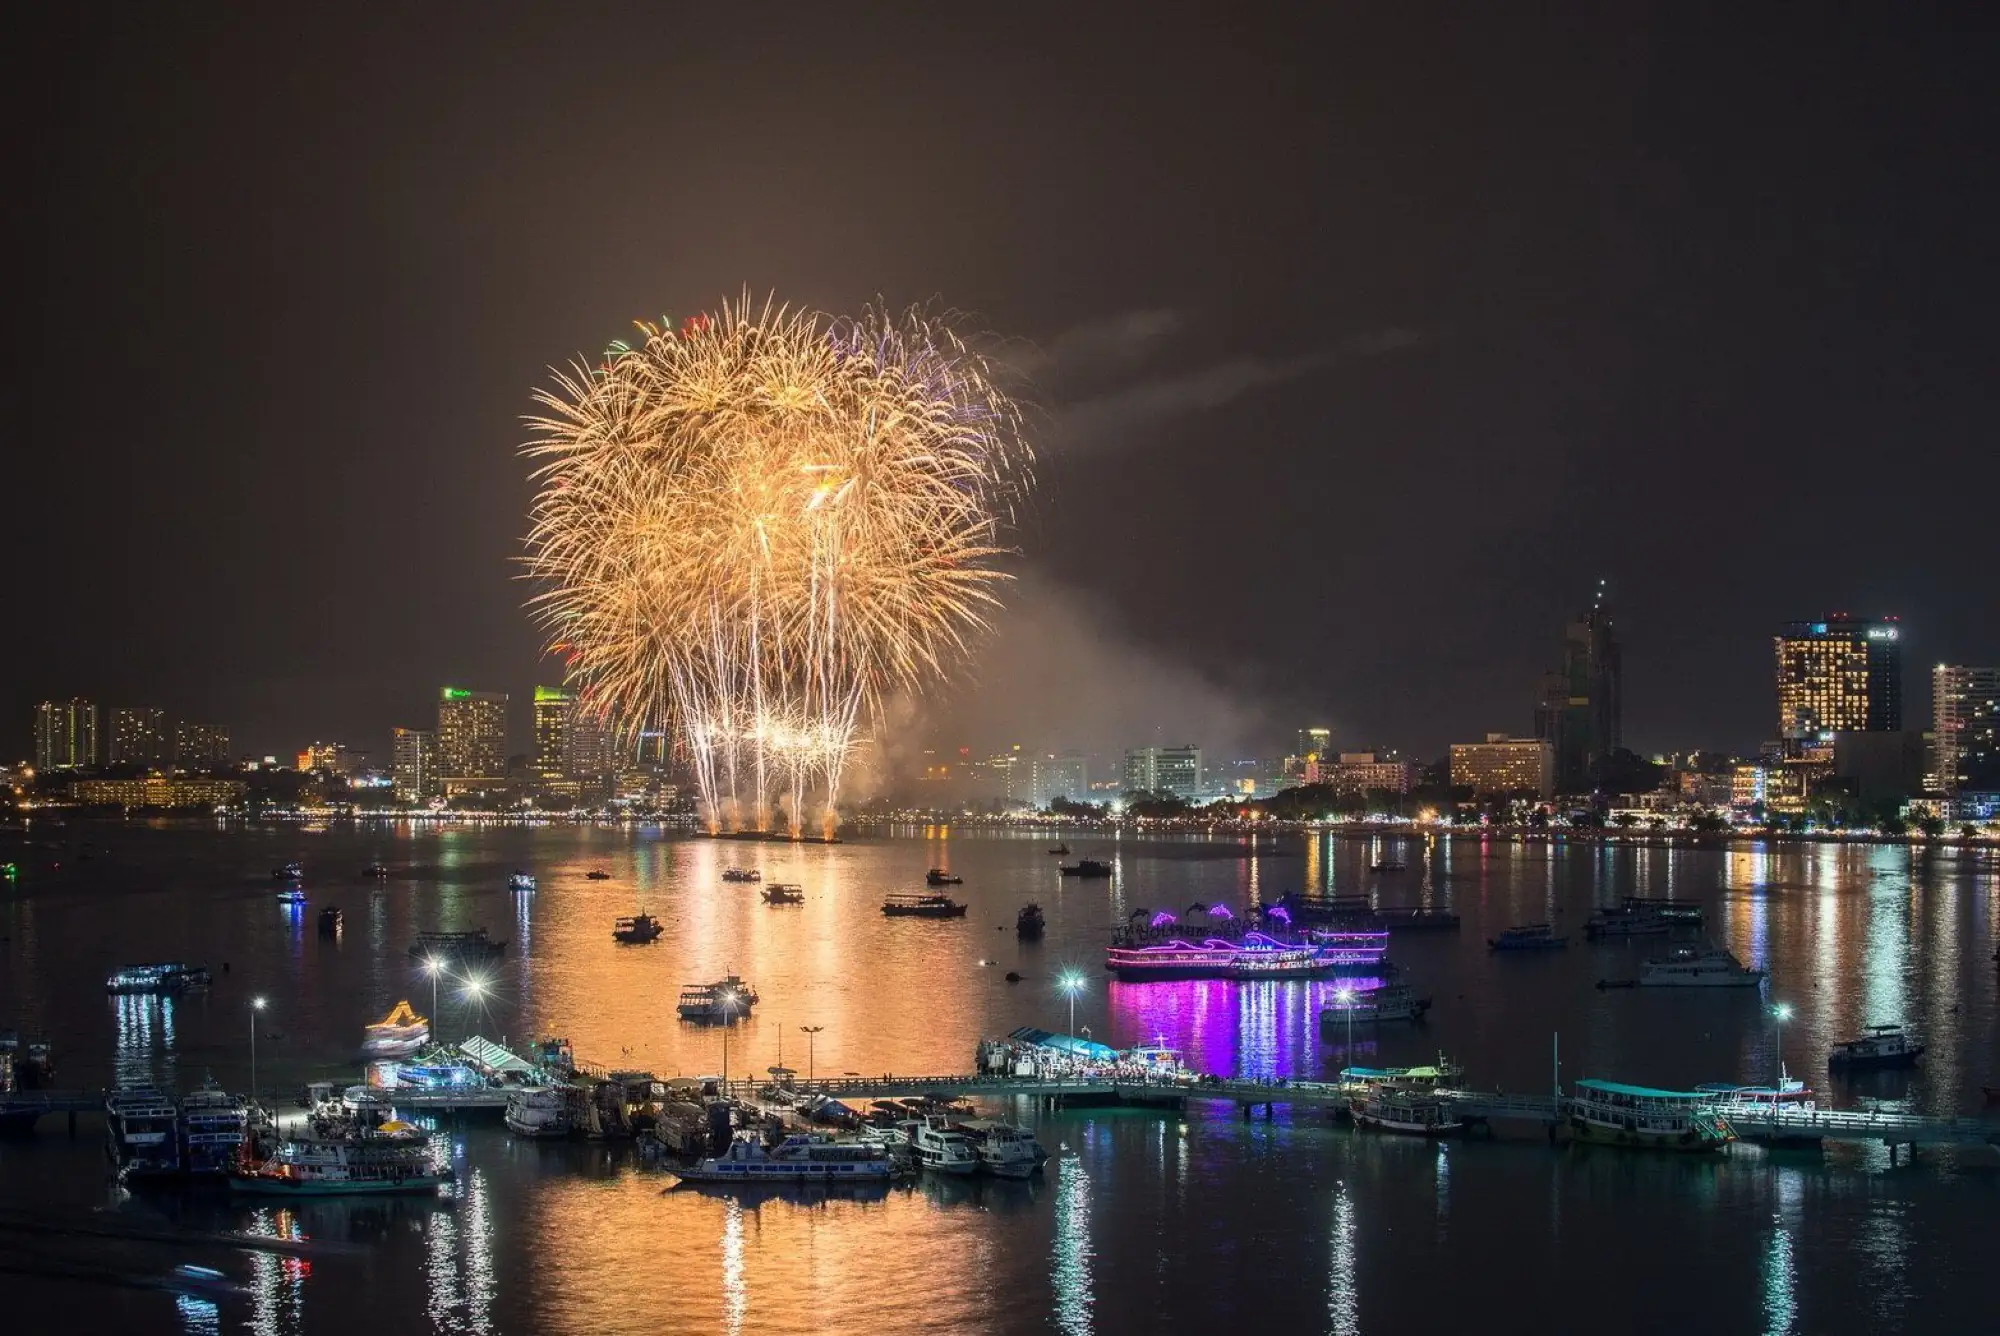 2018芭堤雅國際煙火節Pattaya International Fireworks Festival